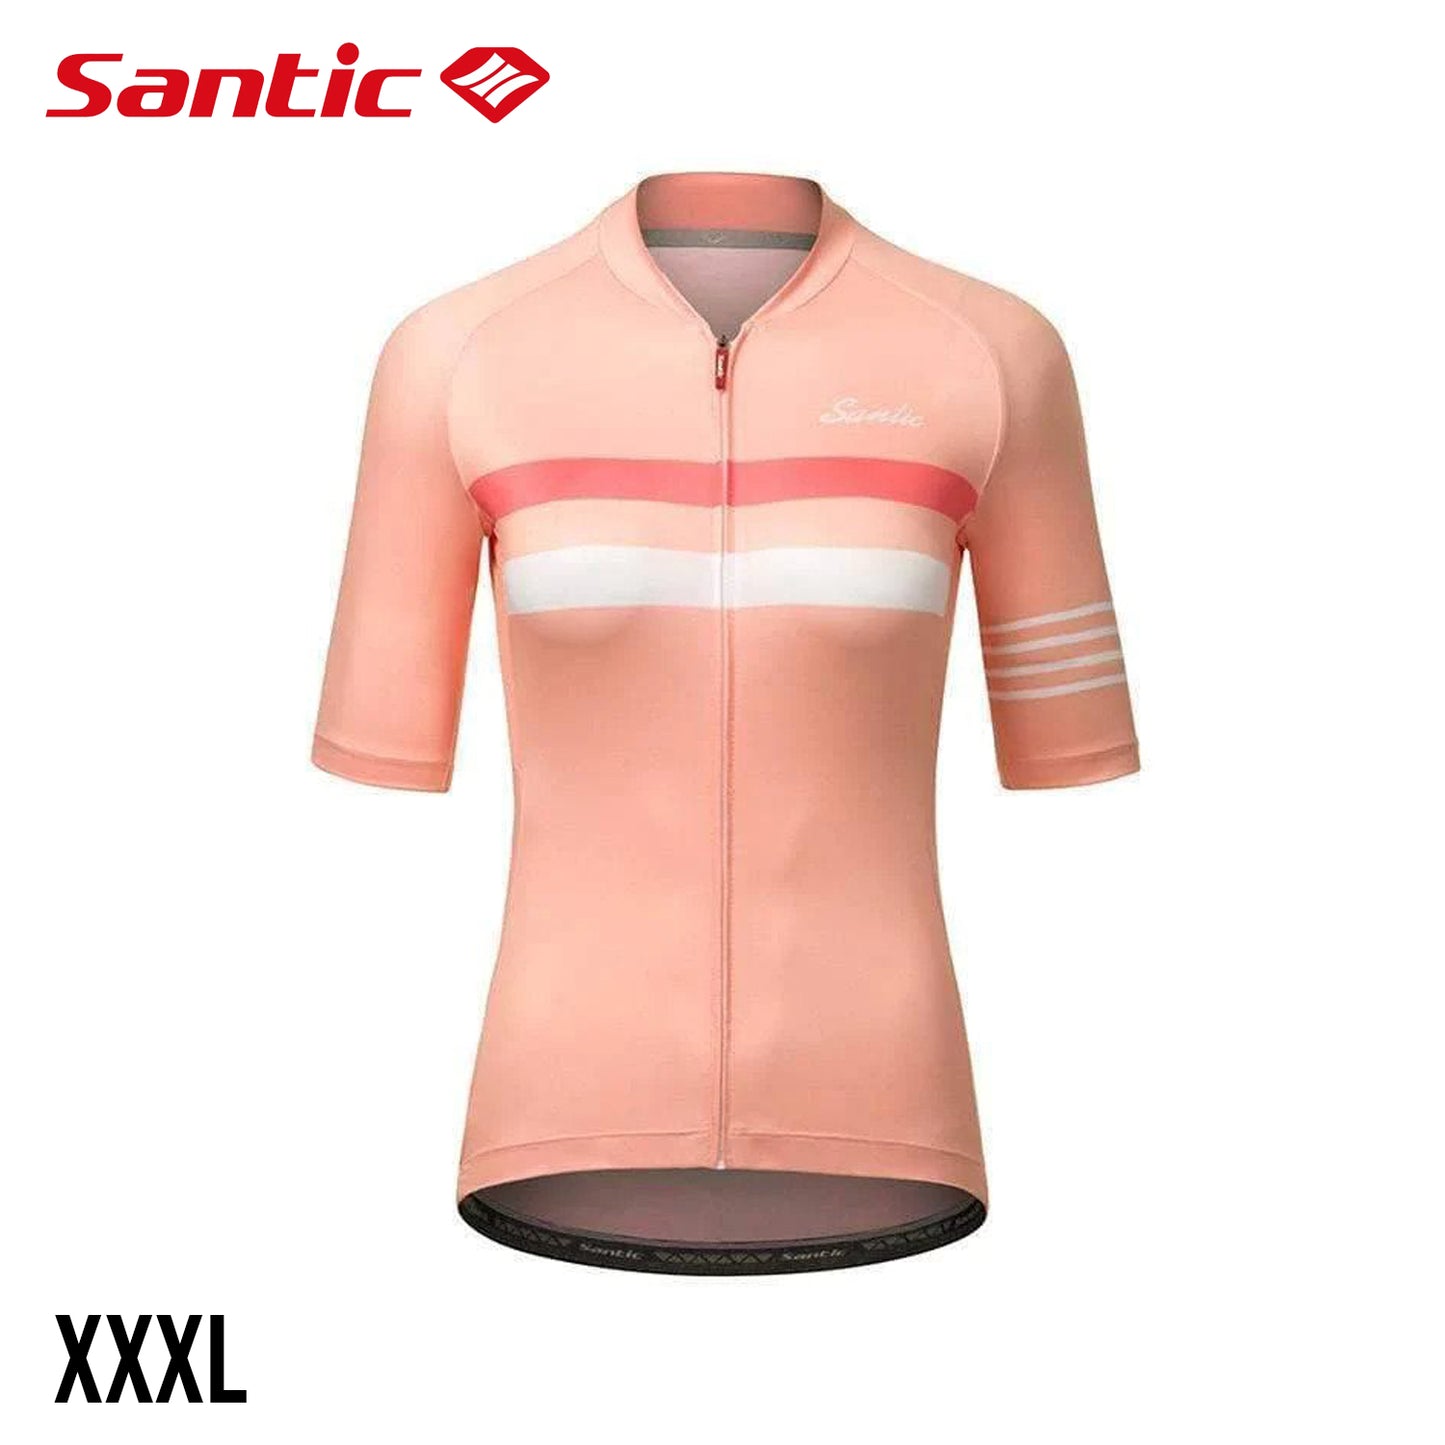 Santic Pali Women's Short Sleeve Summer Jersey - Pink